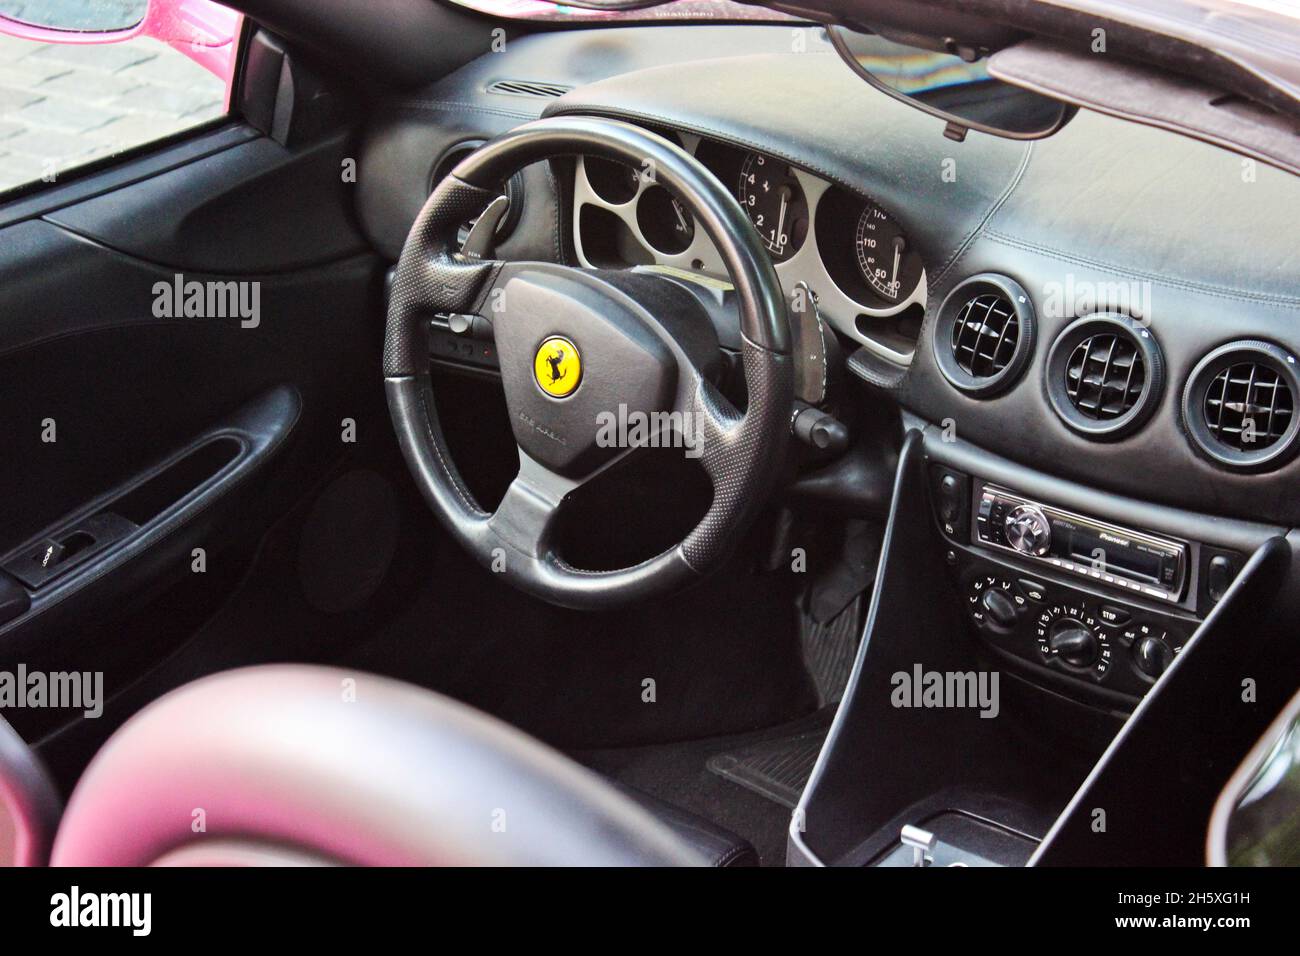 Kiev, Ukraine - 1 juin 2013: Ferrari Modena F360 Spider Sbarro GT8.Vue de l'intérieur d'une automobile moderne montrant le tableau de bord Banque D'Images